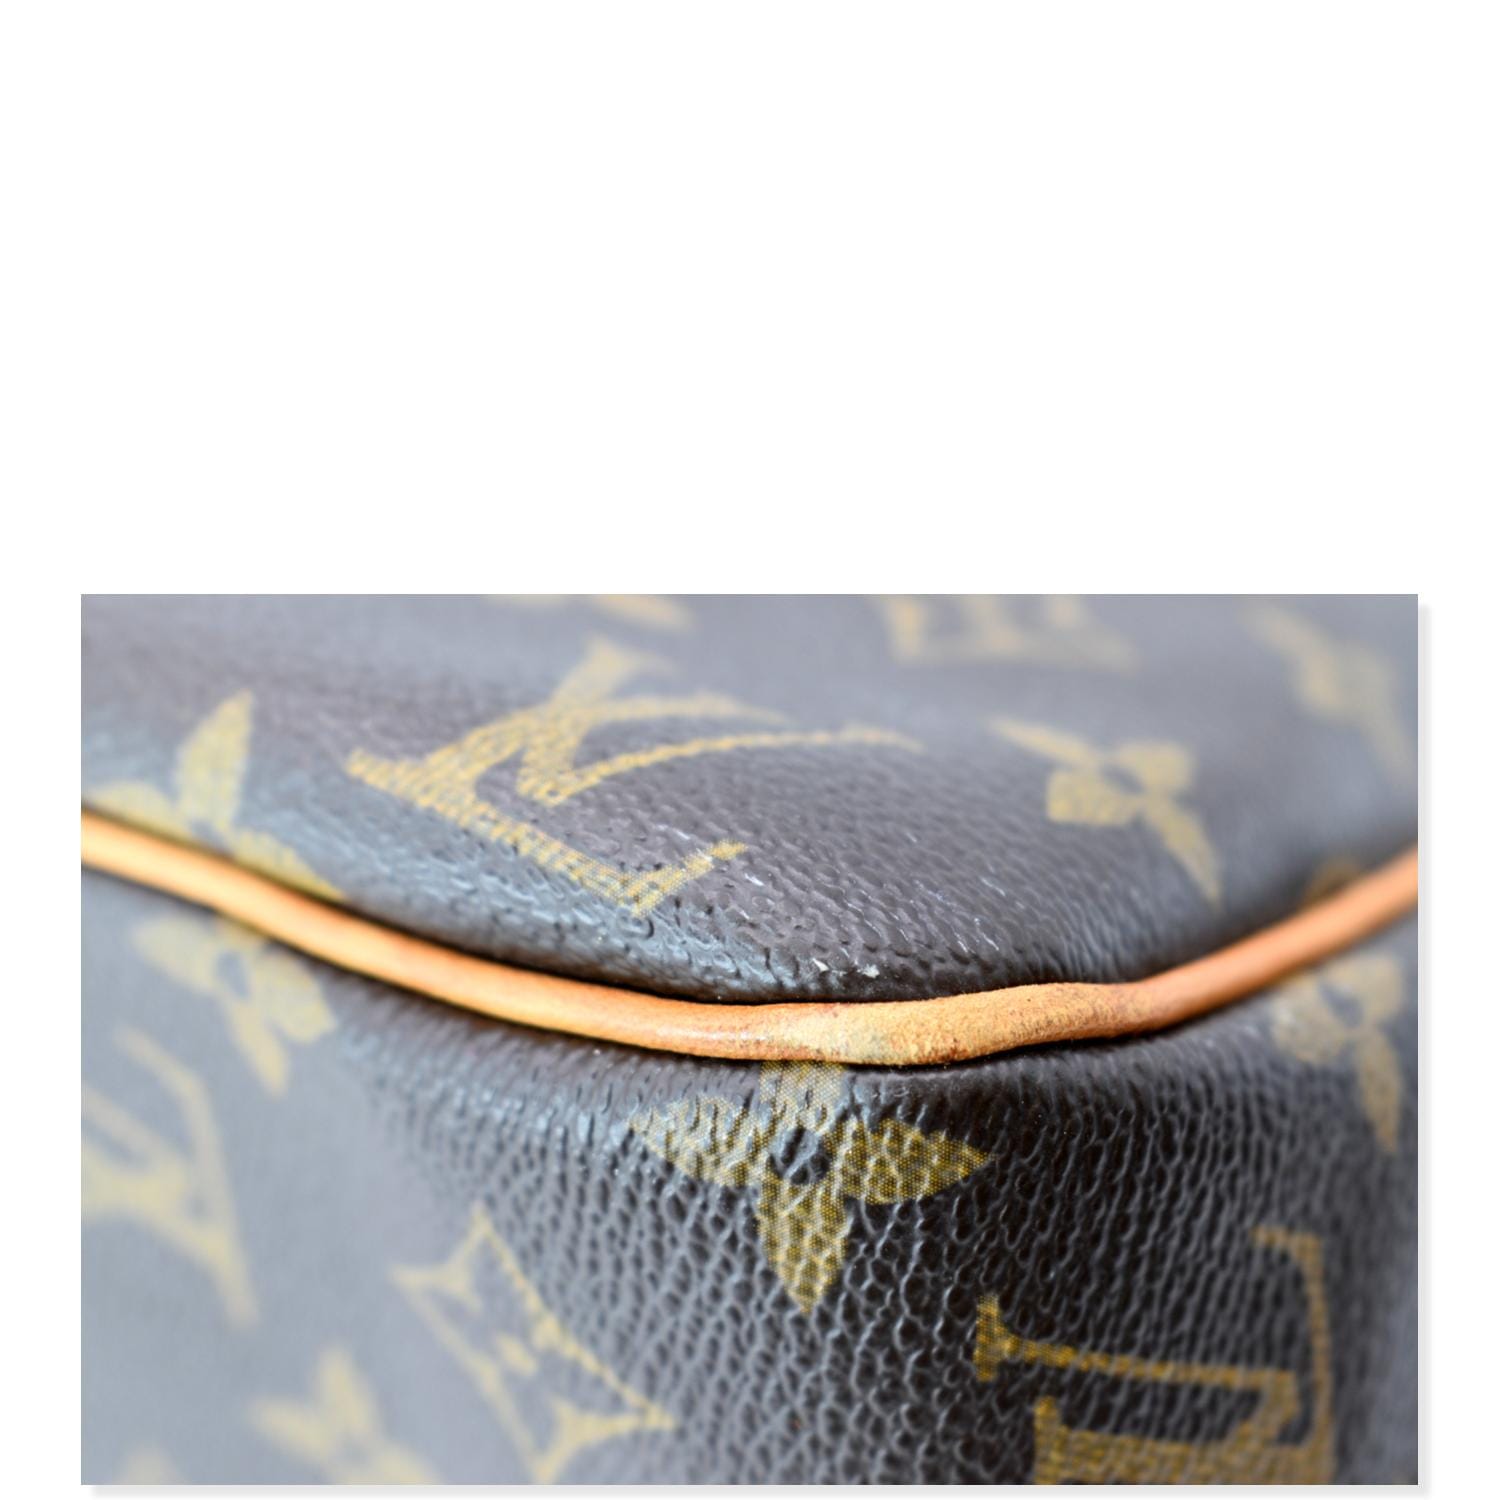 Louis Vuitton batignolles horizontal monogram shoulder bag tote